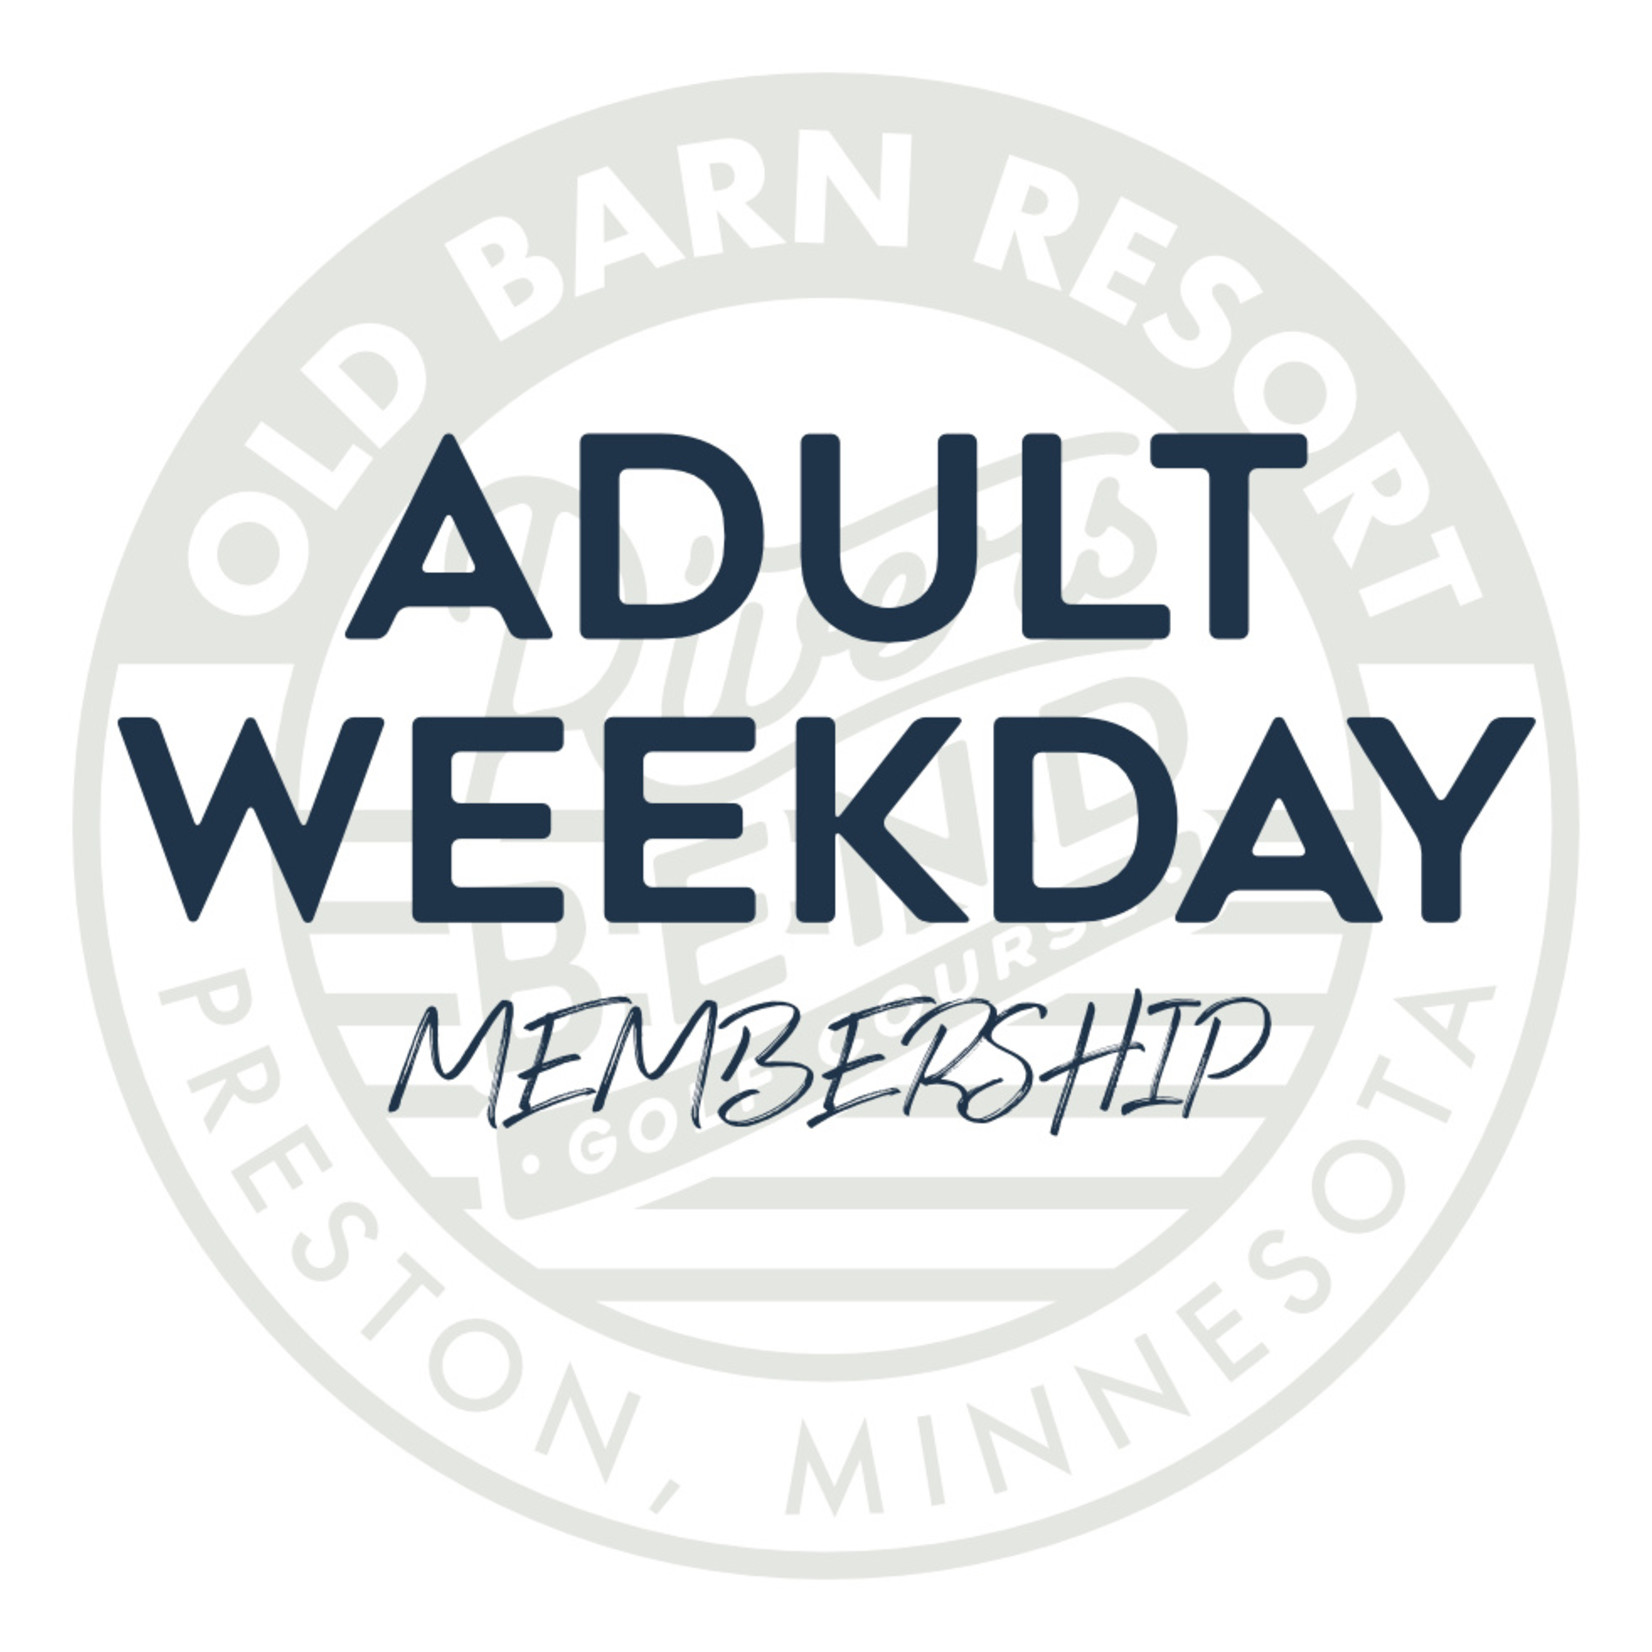 Adult Weekday Membership - Weekday Member